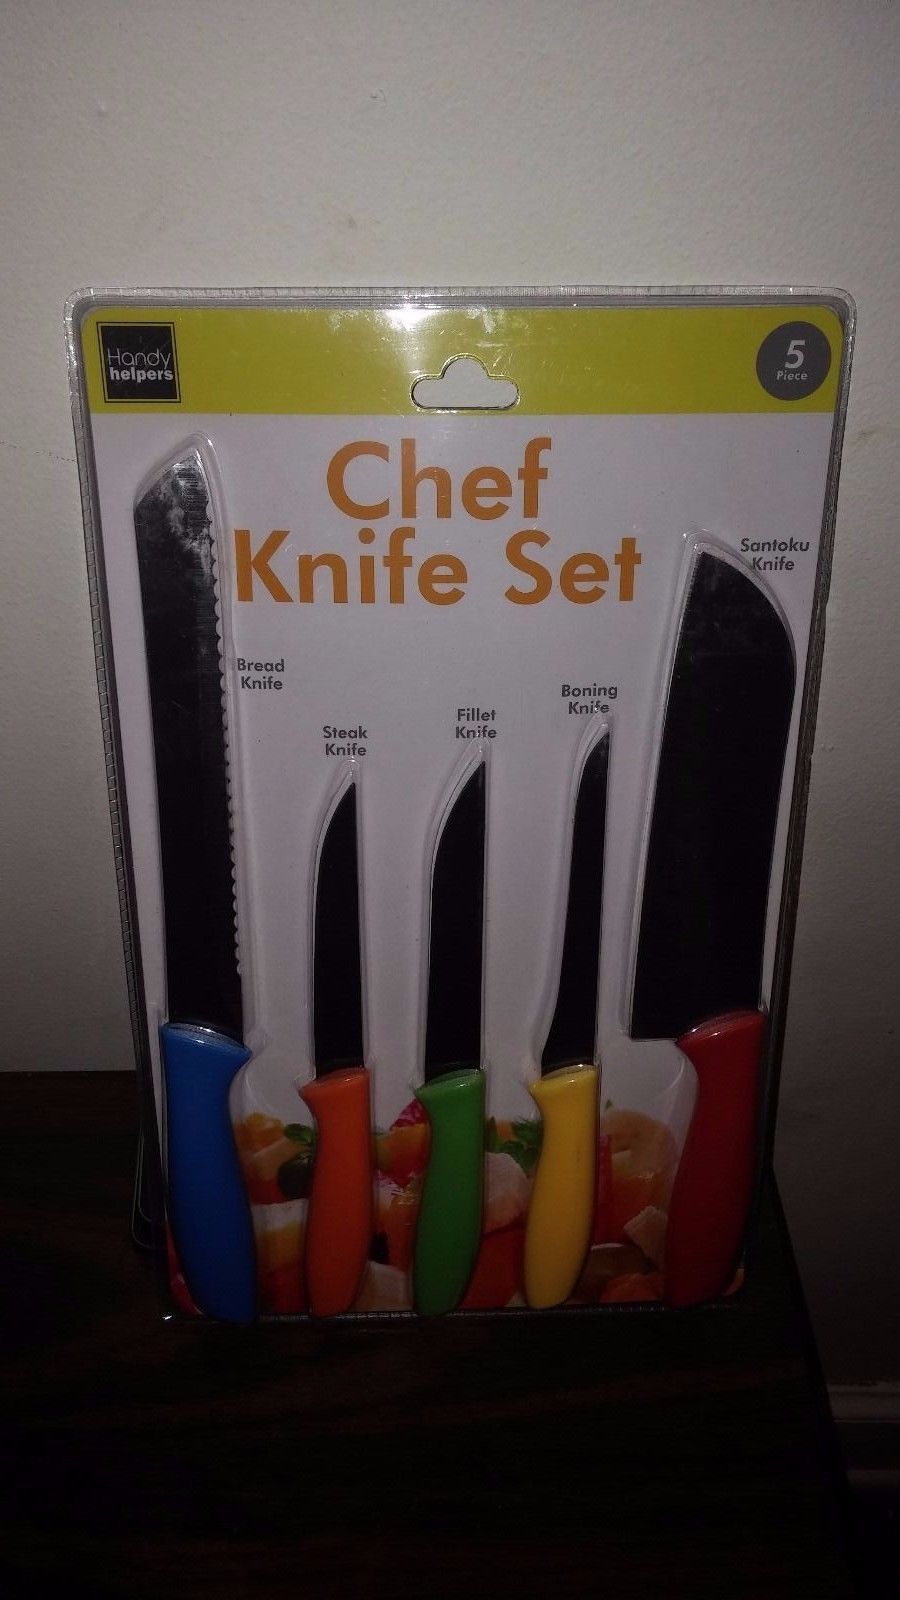 5 Multi-Color Chef Knife set - $13.56